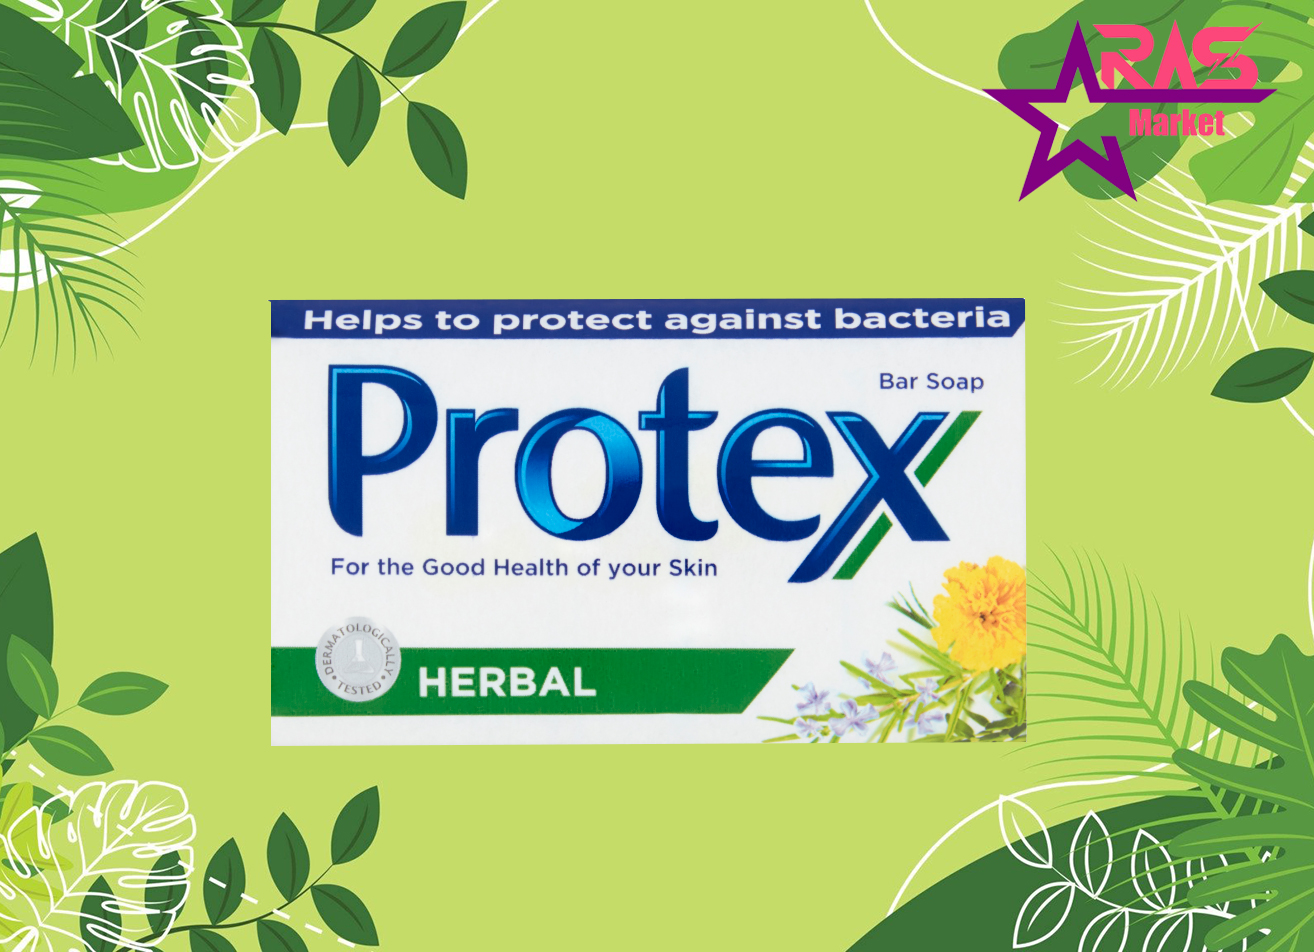 صابون پروتکس حاوی عصاره گیاهان دارویی 150 گرم ، خرید اینترنتی محصولات شوینده و بهداشتی